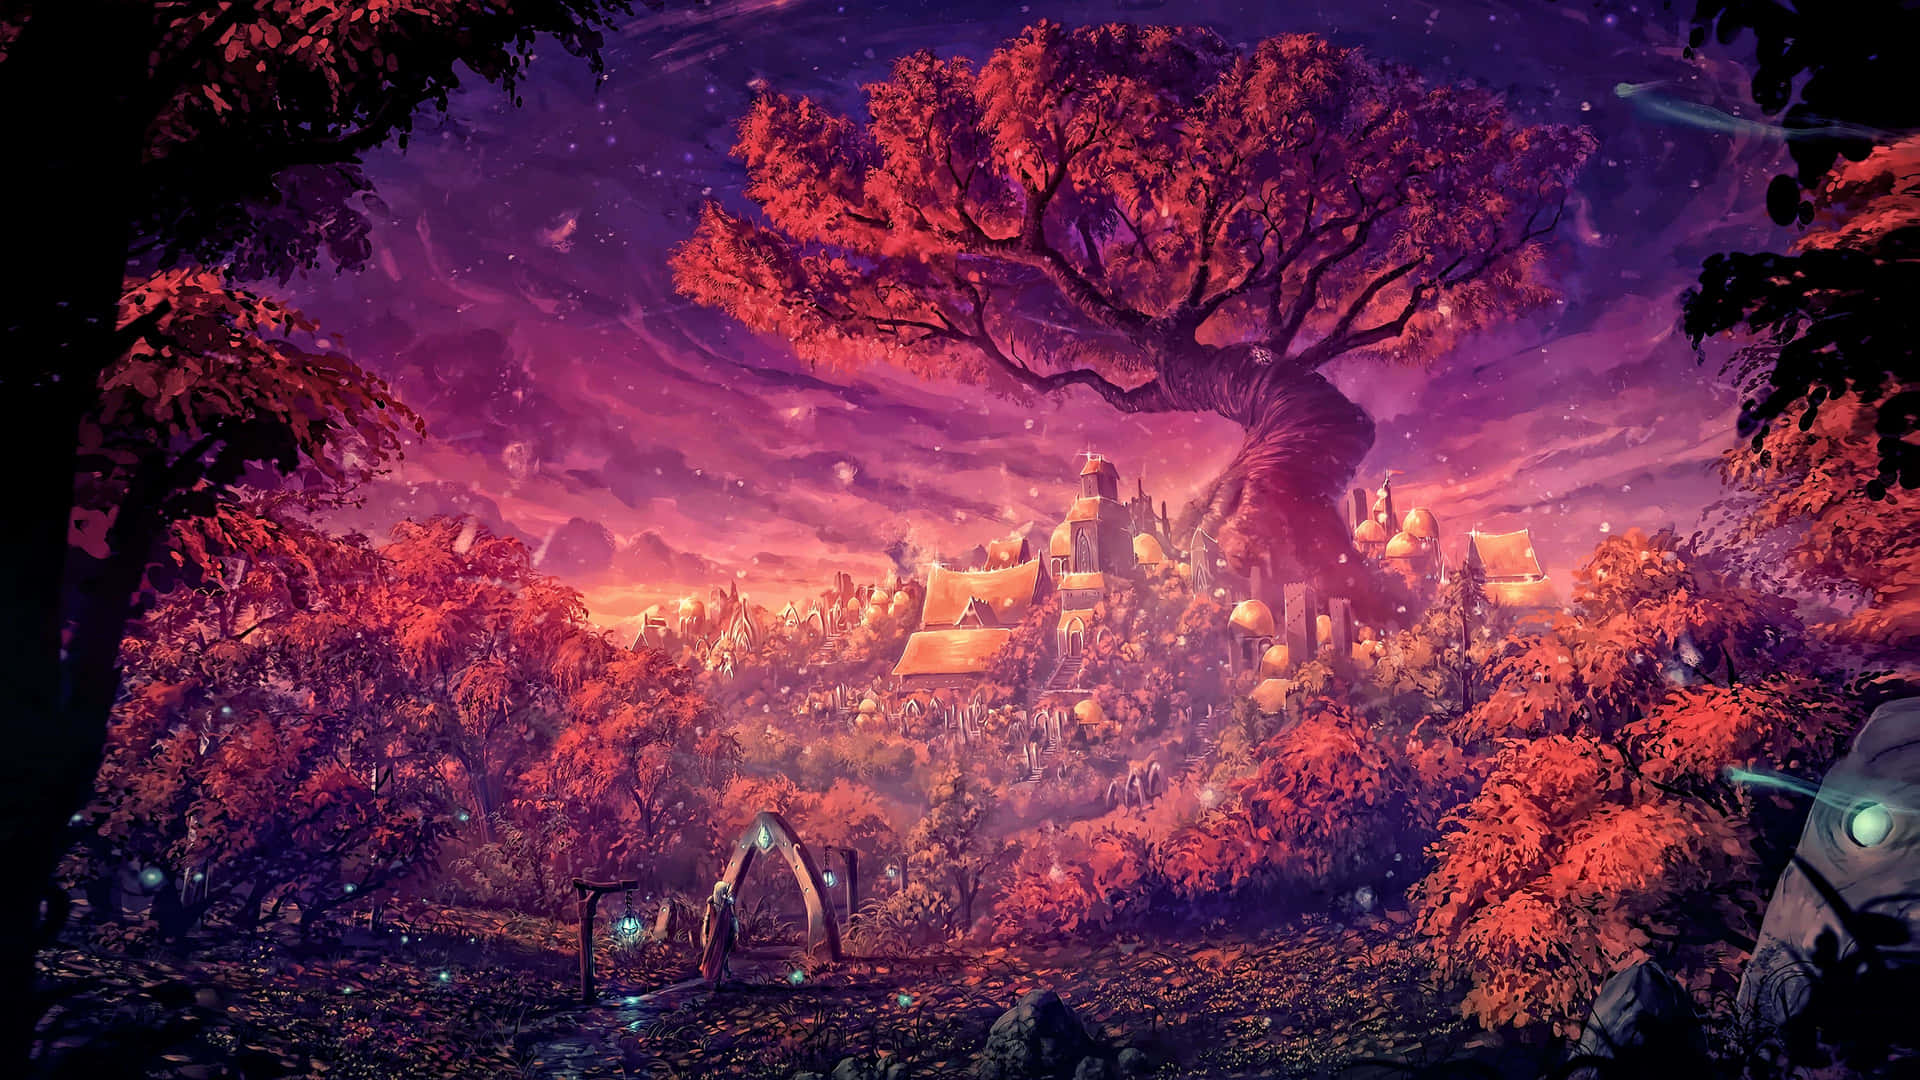 Árbolde La Vida En Un Bosque De Fantasía. Fondo de pantalla